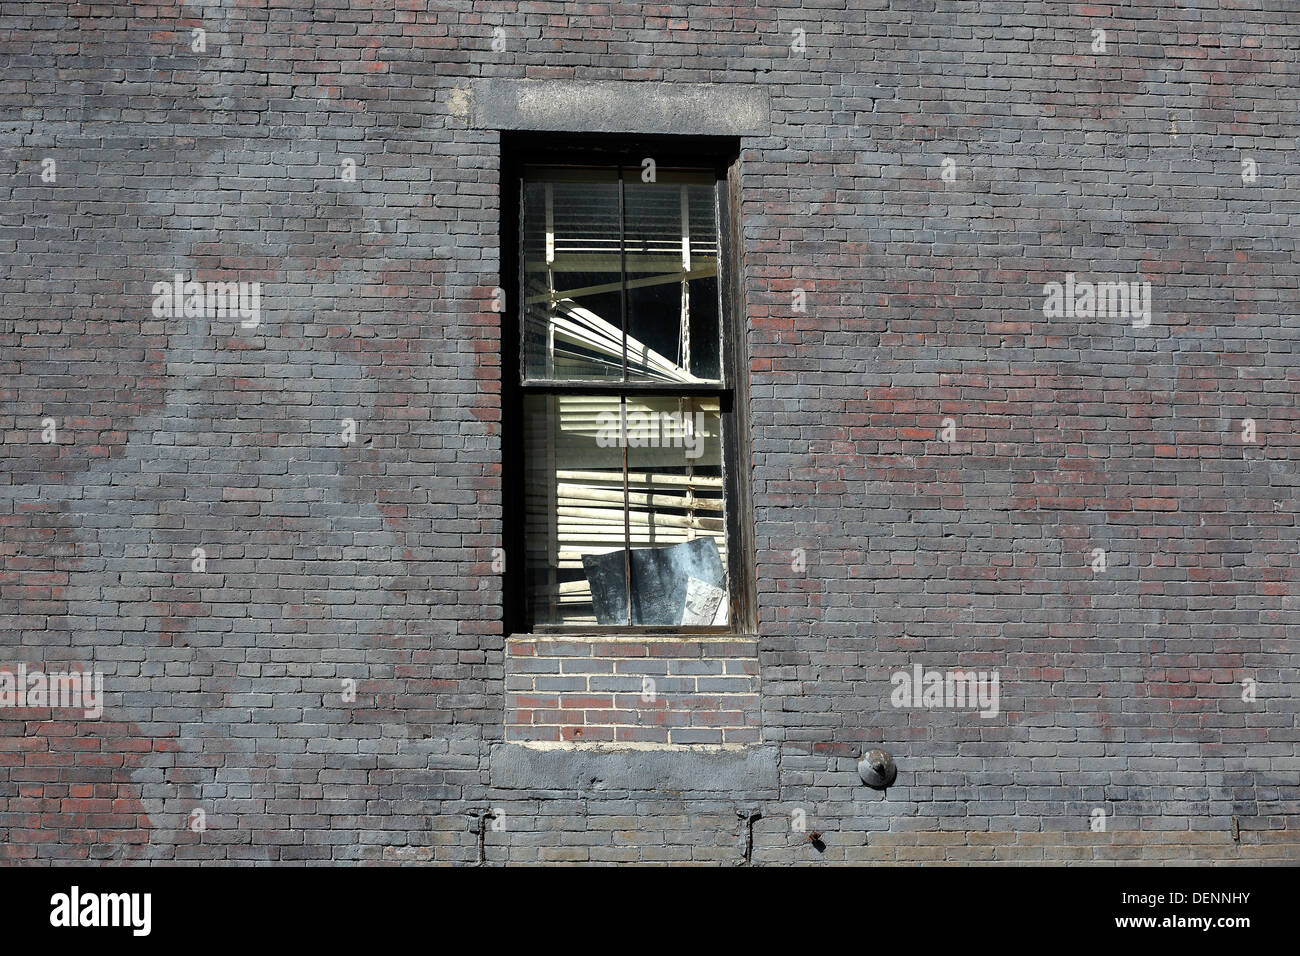 Mur fenêtre cassée ombre Bangor Maine Banque D'Images